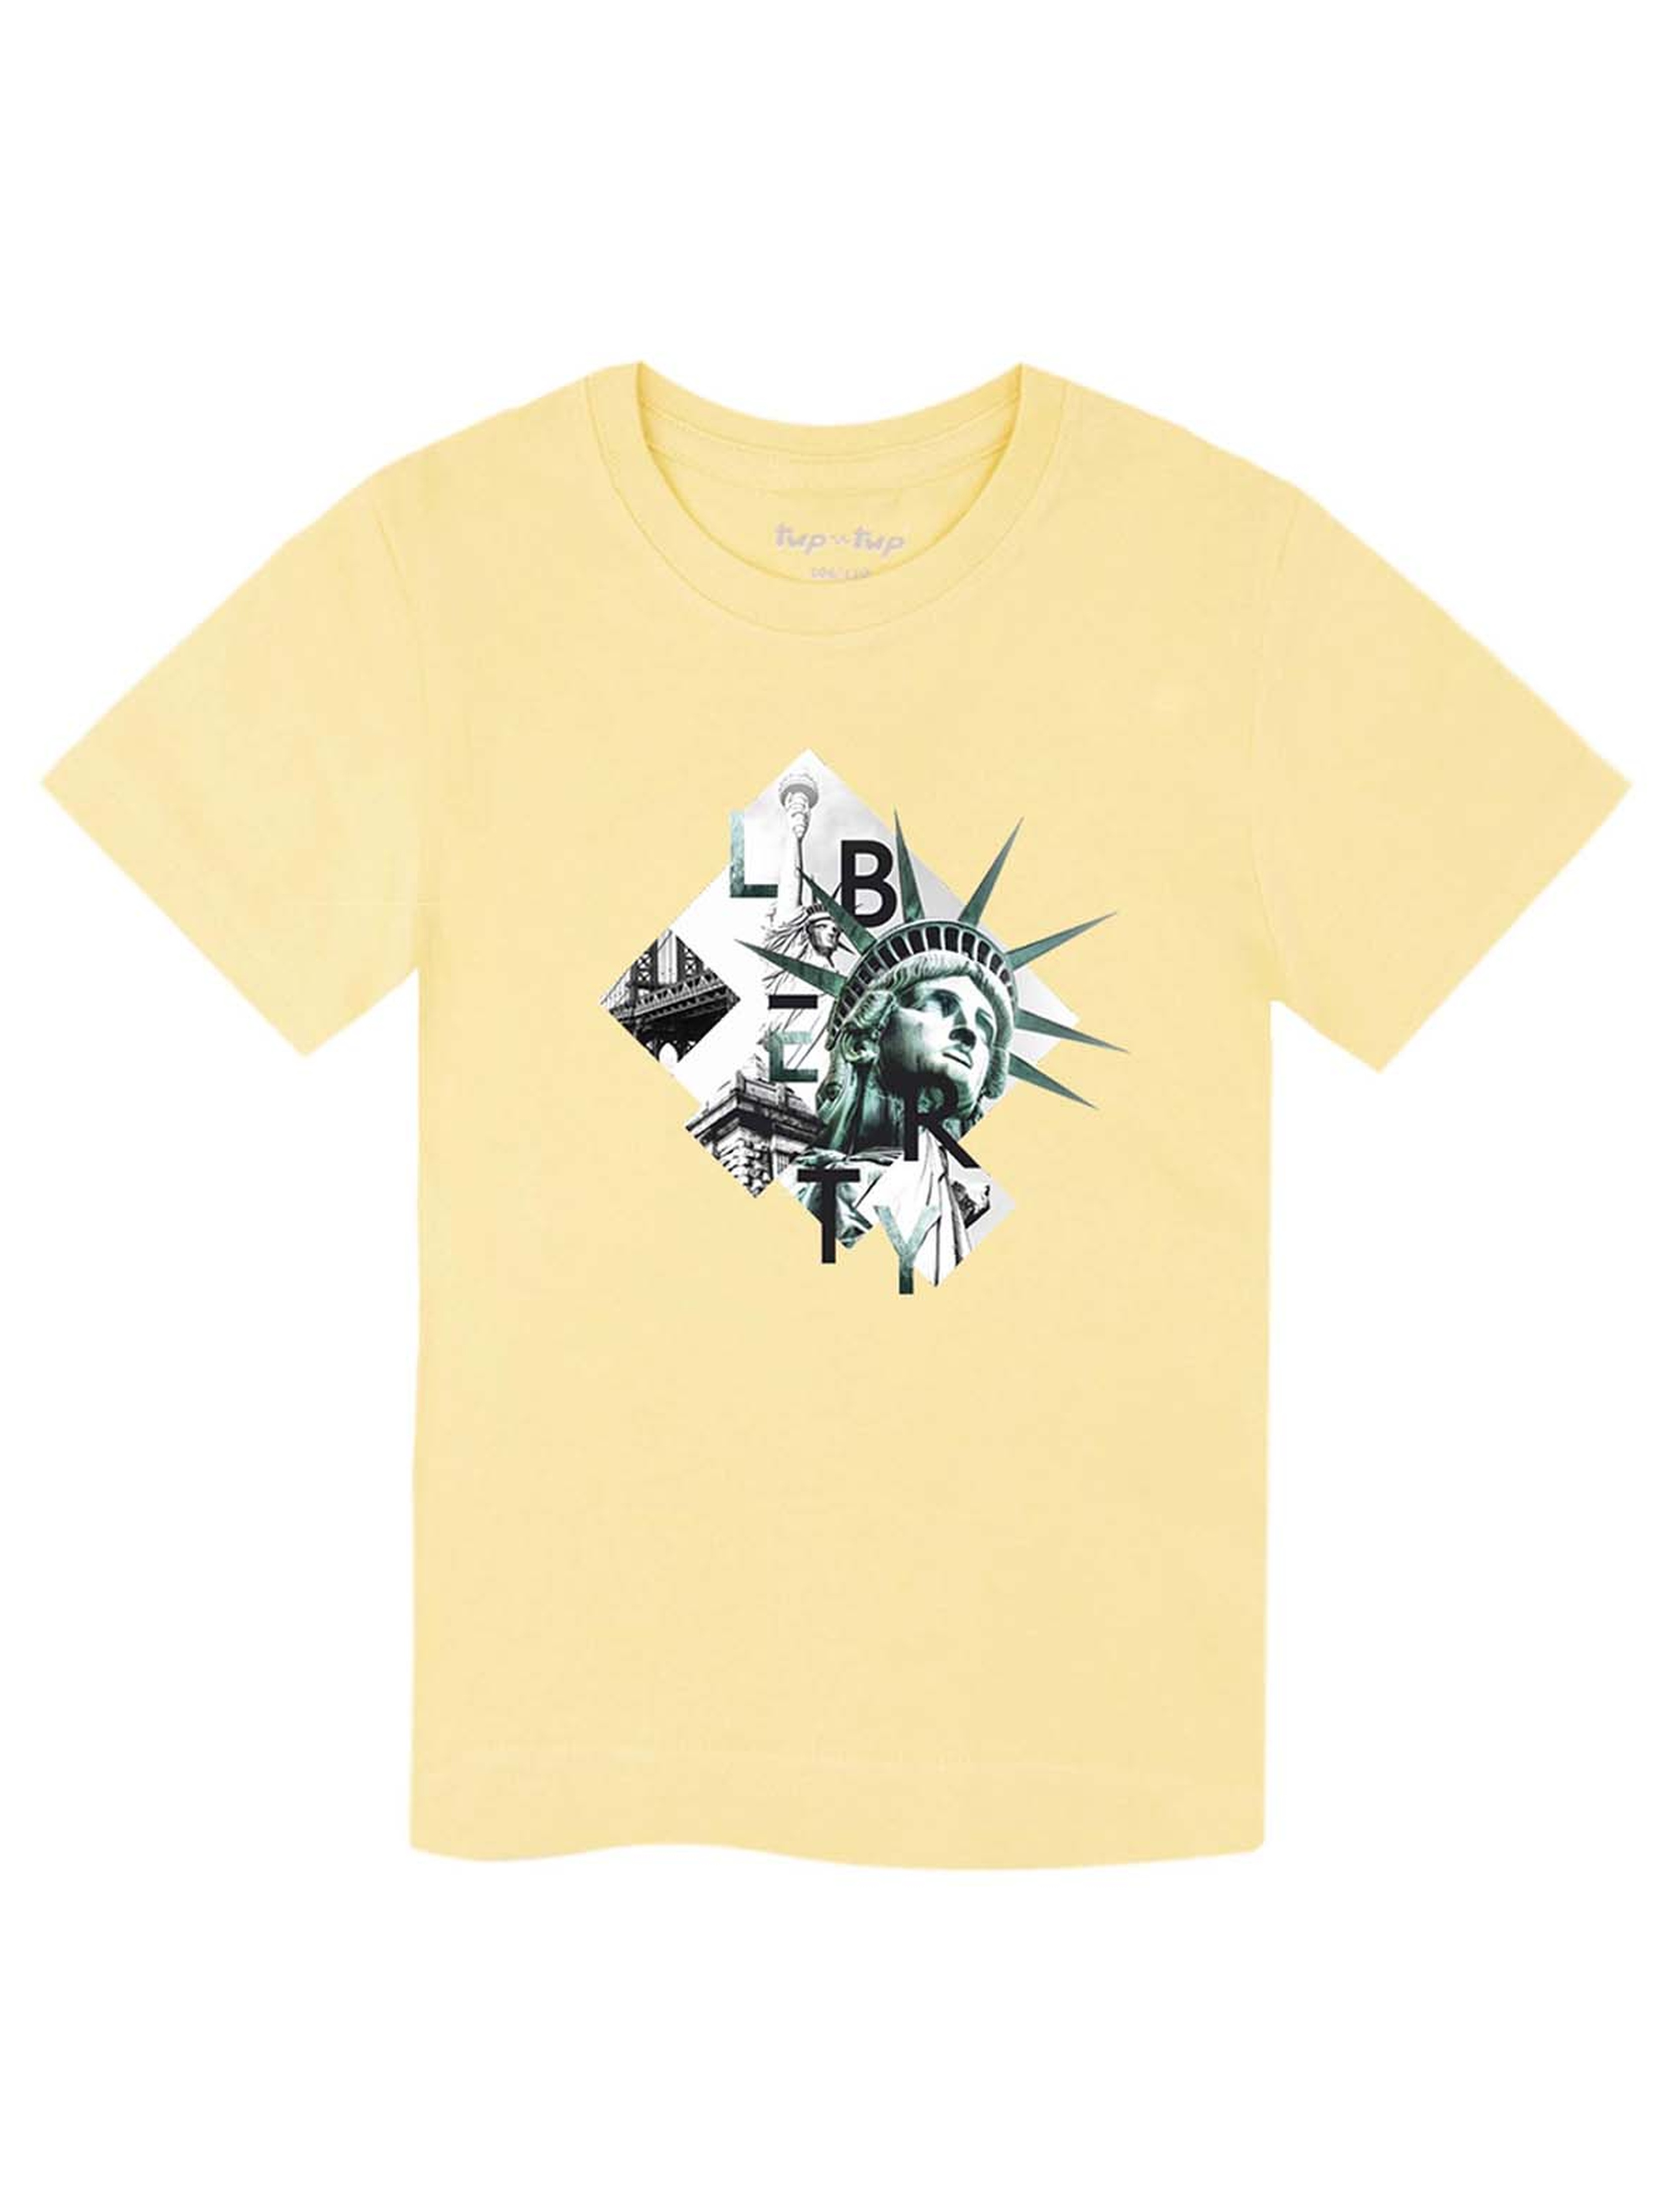 Zółty t-shirt chłopięcy z bawełny Tup Tup Statua Wolności